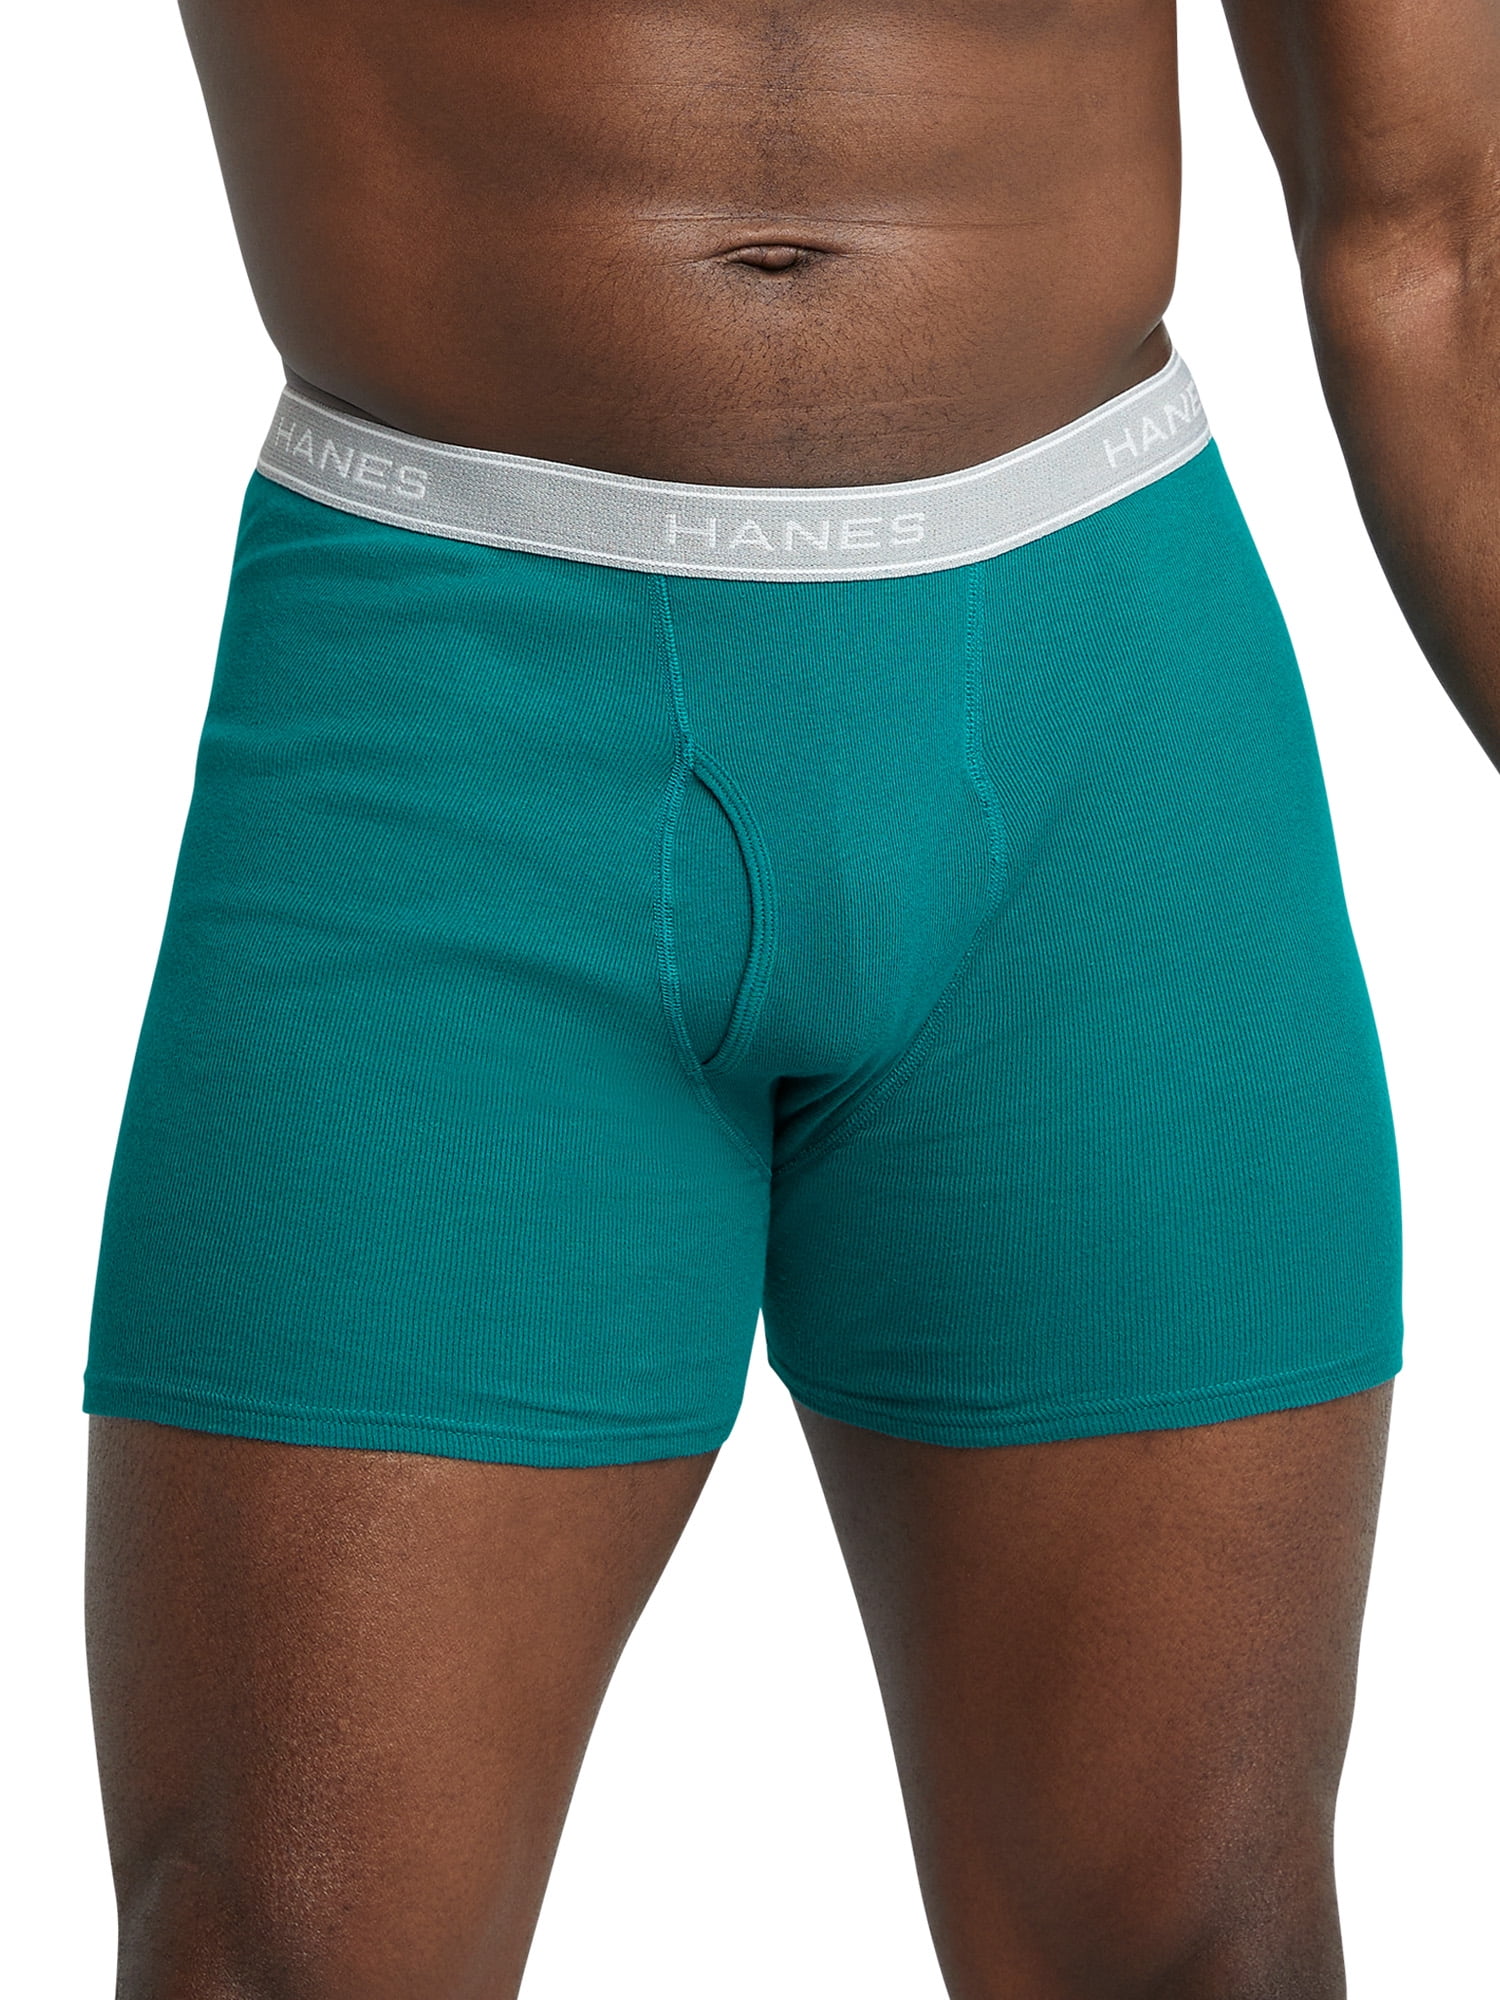 Hanes Mens TAGLESS® Boxer Briefs Underwear 10 Pack - 2349K0